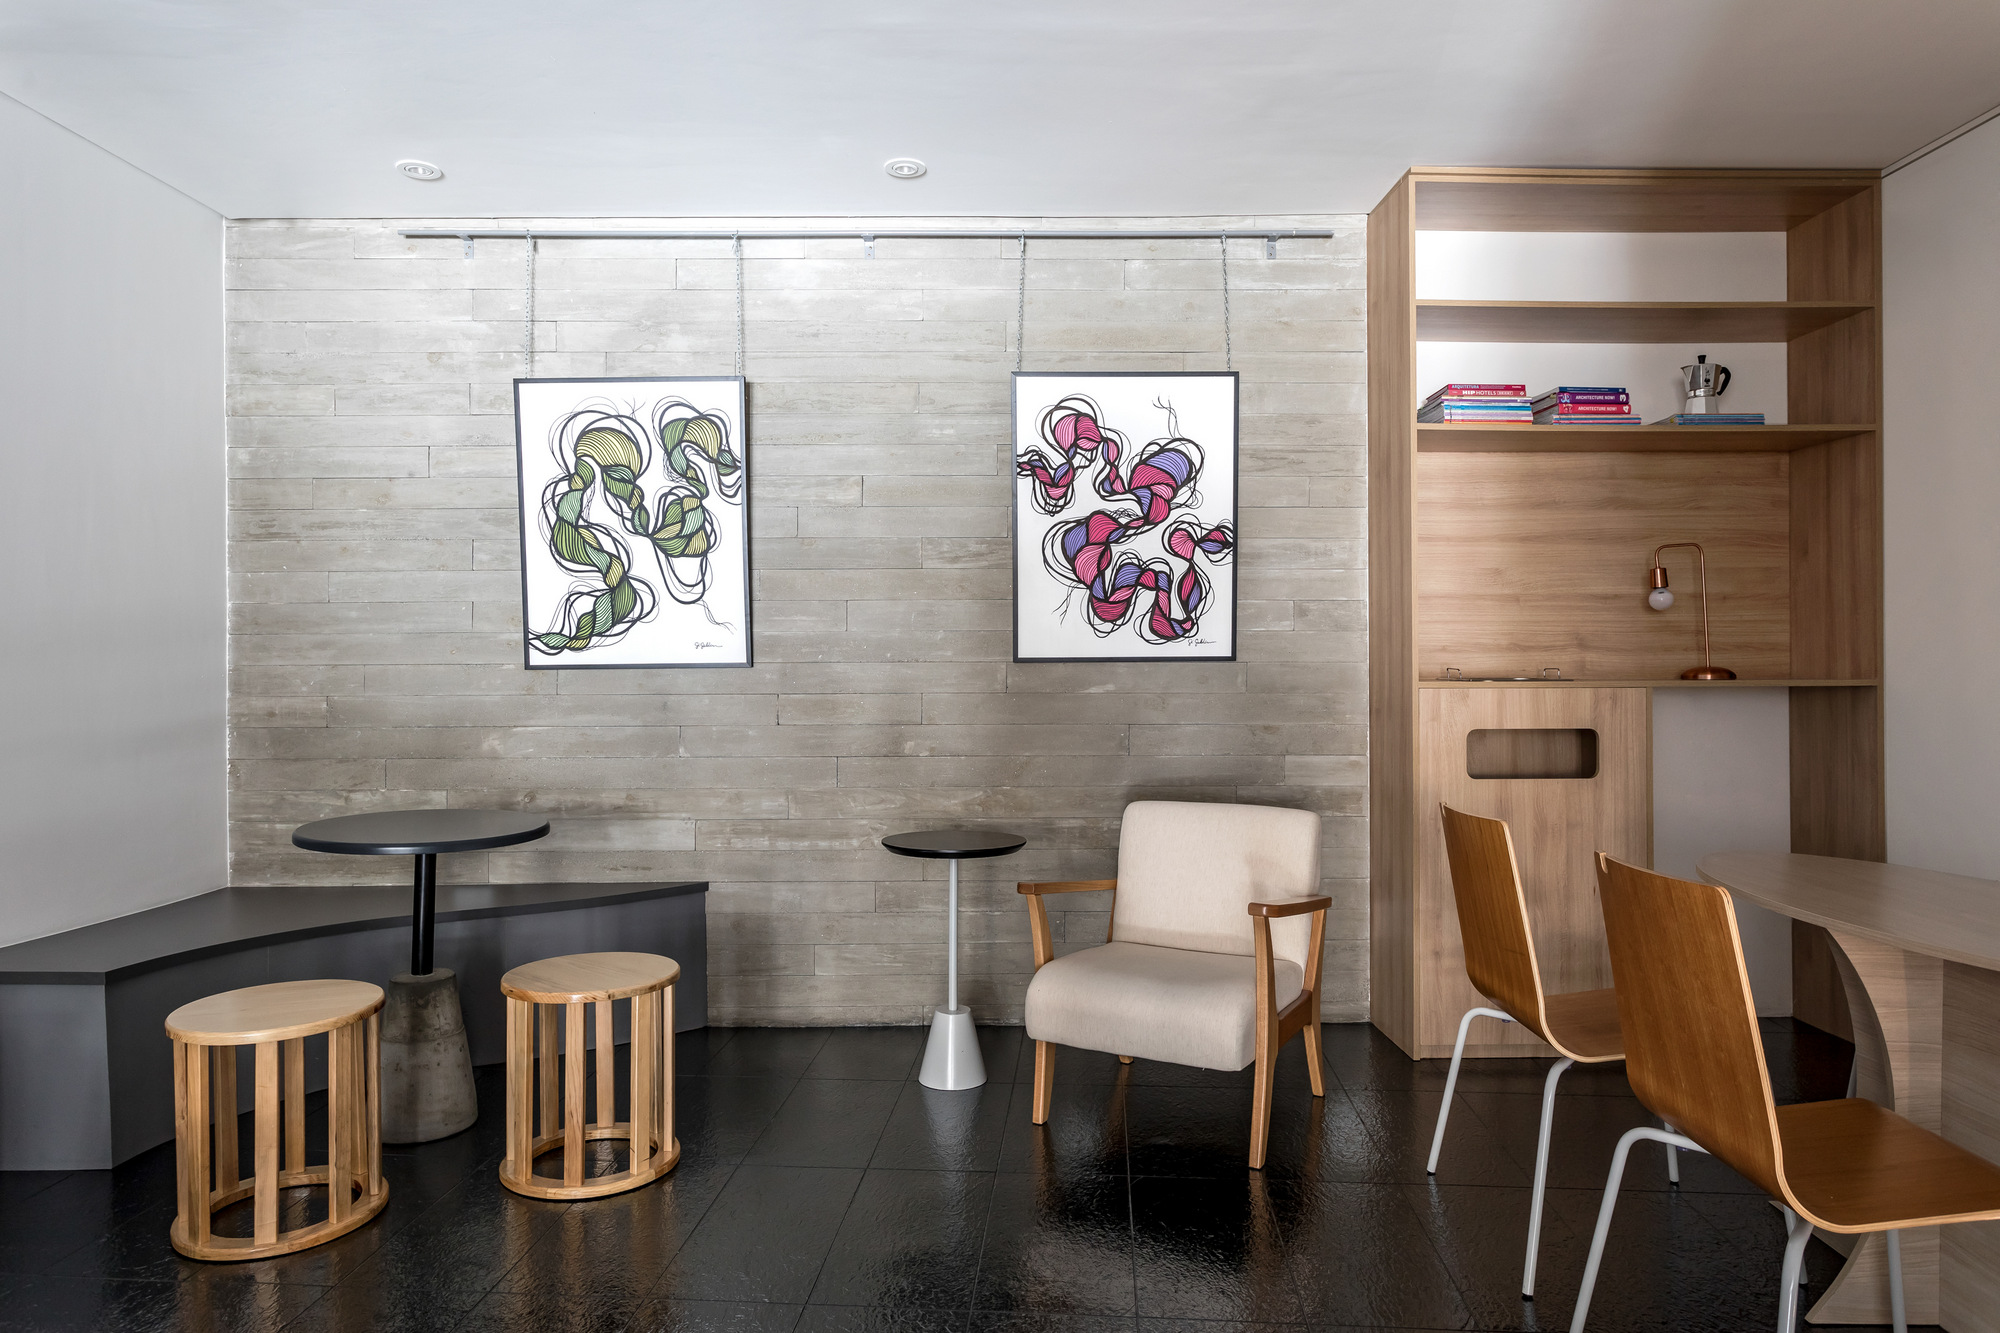 图片[7]|Ben咖啡馆|ART-Arrakis | 建筑室内设计的创新与灵感